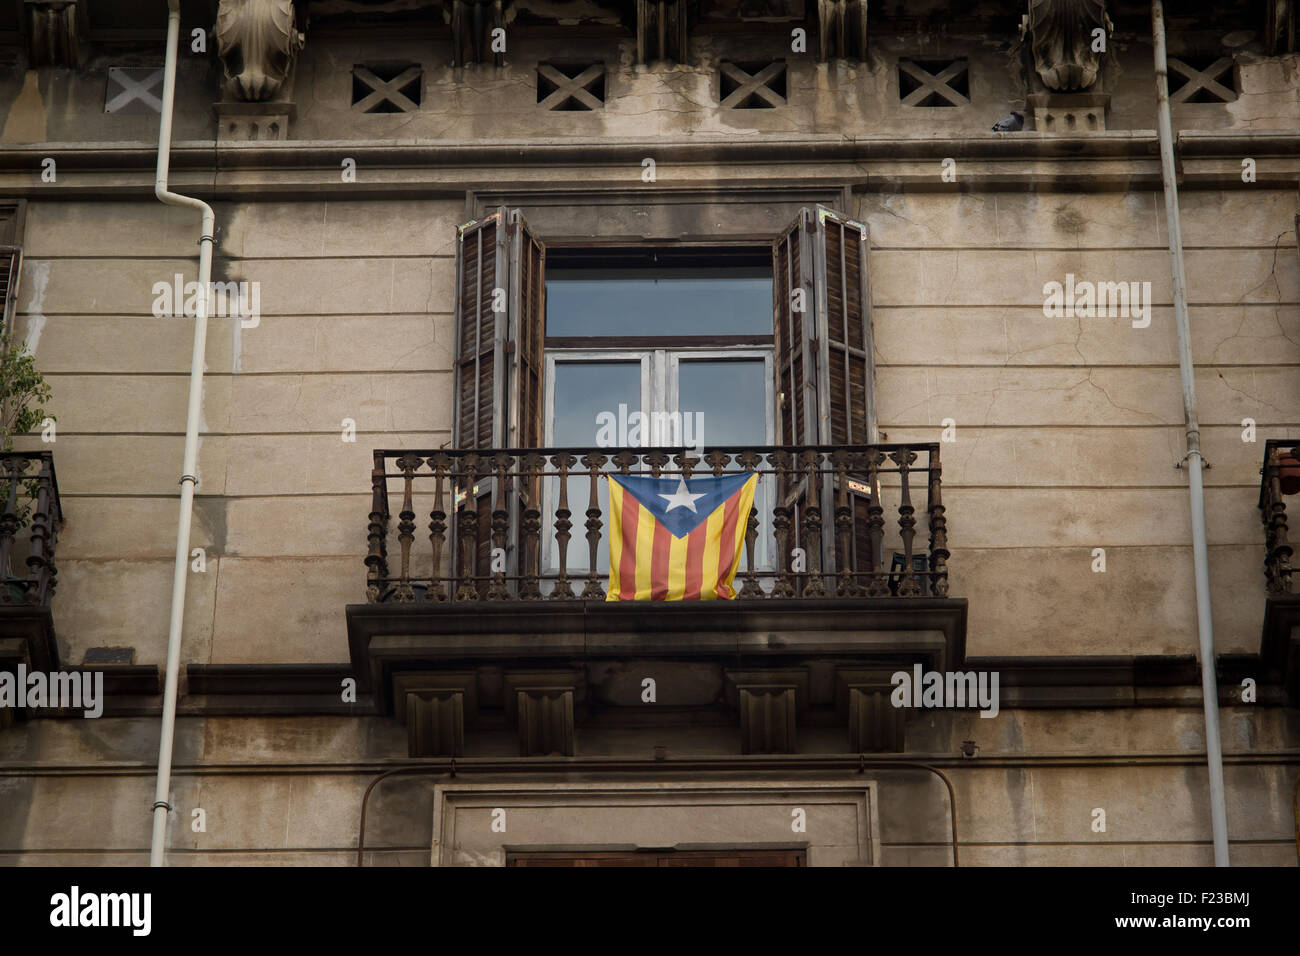 Barcelone, Catalogne, Espagne. 10 Sep, 2015. Un ESTELADA Drapeau indépendantiste catalan () se bloque à partir d'un balcon à Barcelone un jour avant la célébration de La Diada Catalane (Journée nationale) le 10 septembre 2015. Les derniers sondages donnent la majorité absolue à l'indépendance de parties (Junts Pel Si et CUP) qui sera au CatalÃ¡n les élections régionales du 27 septembre prochain. © Jordi Boixareu/ZUMA/Alamy Fil Live News Banque D'Images